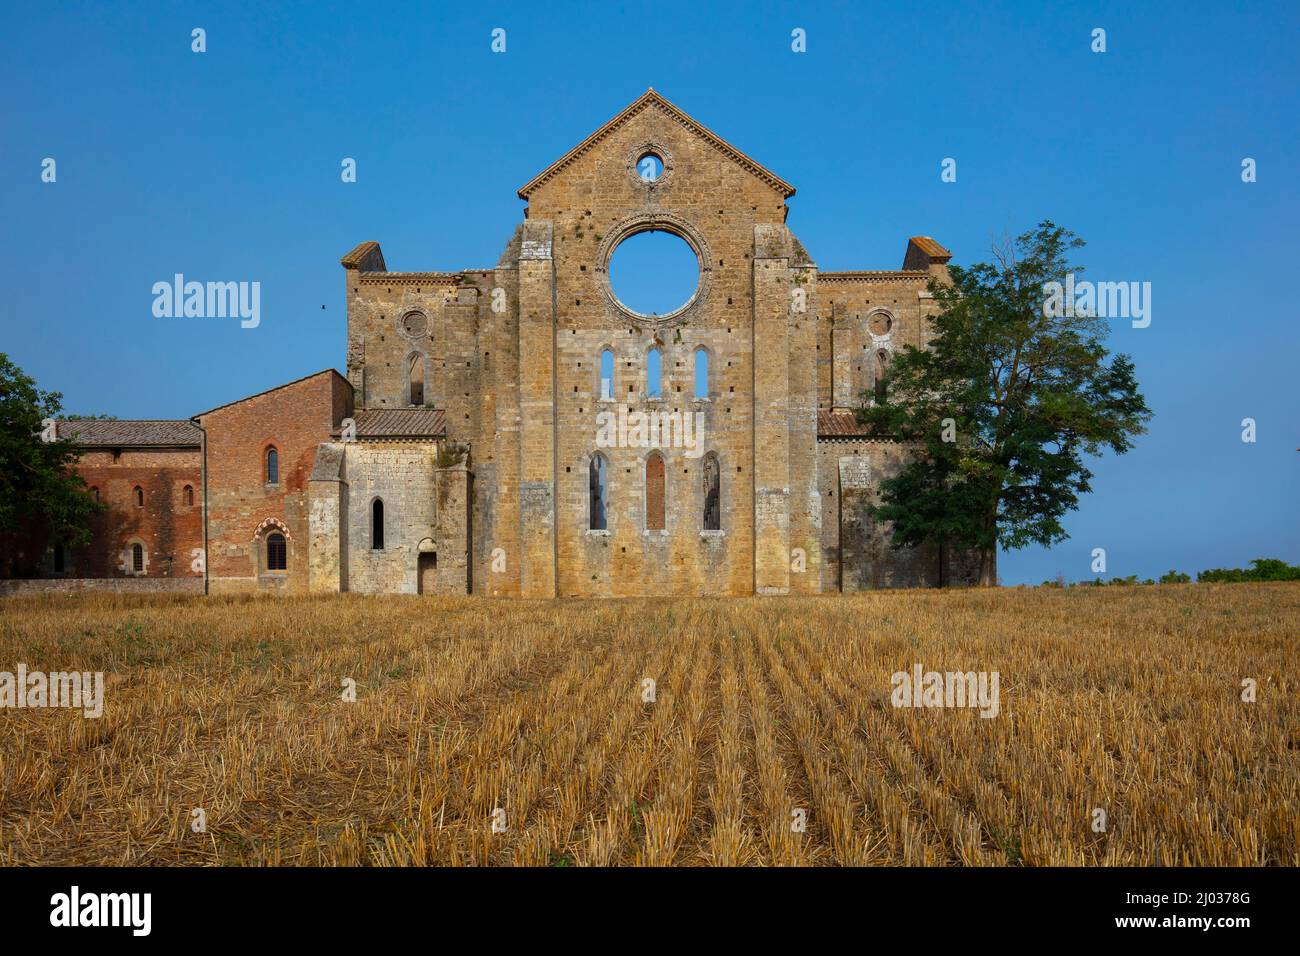 Abbey of San Galgano, Chiusdino, Siena, Tuscany, Italy, Europe Stock Photo